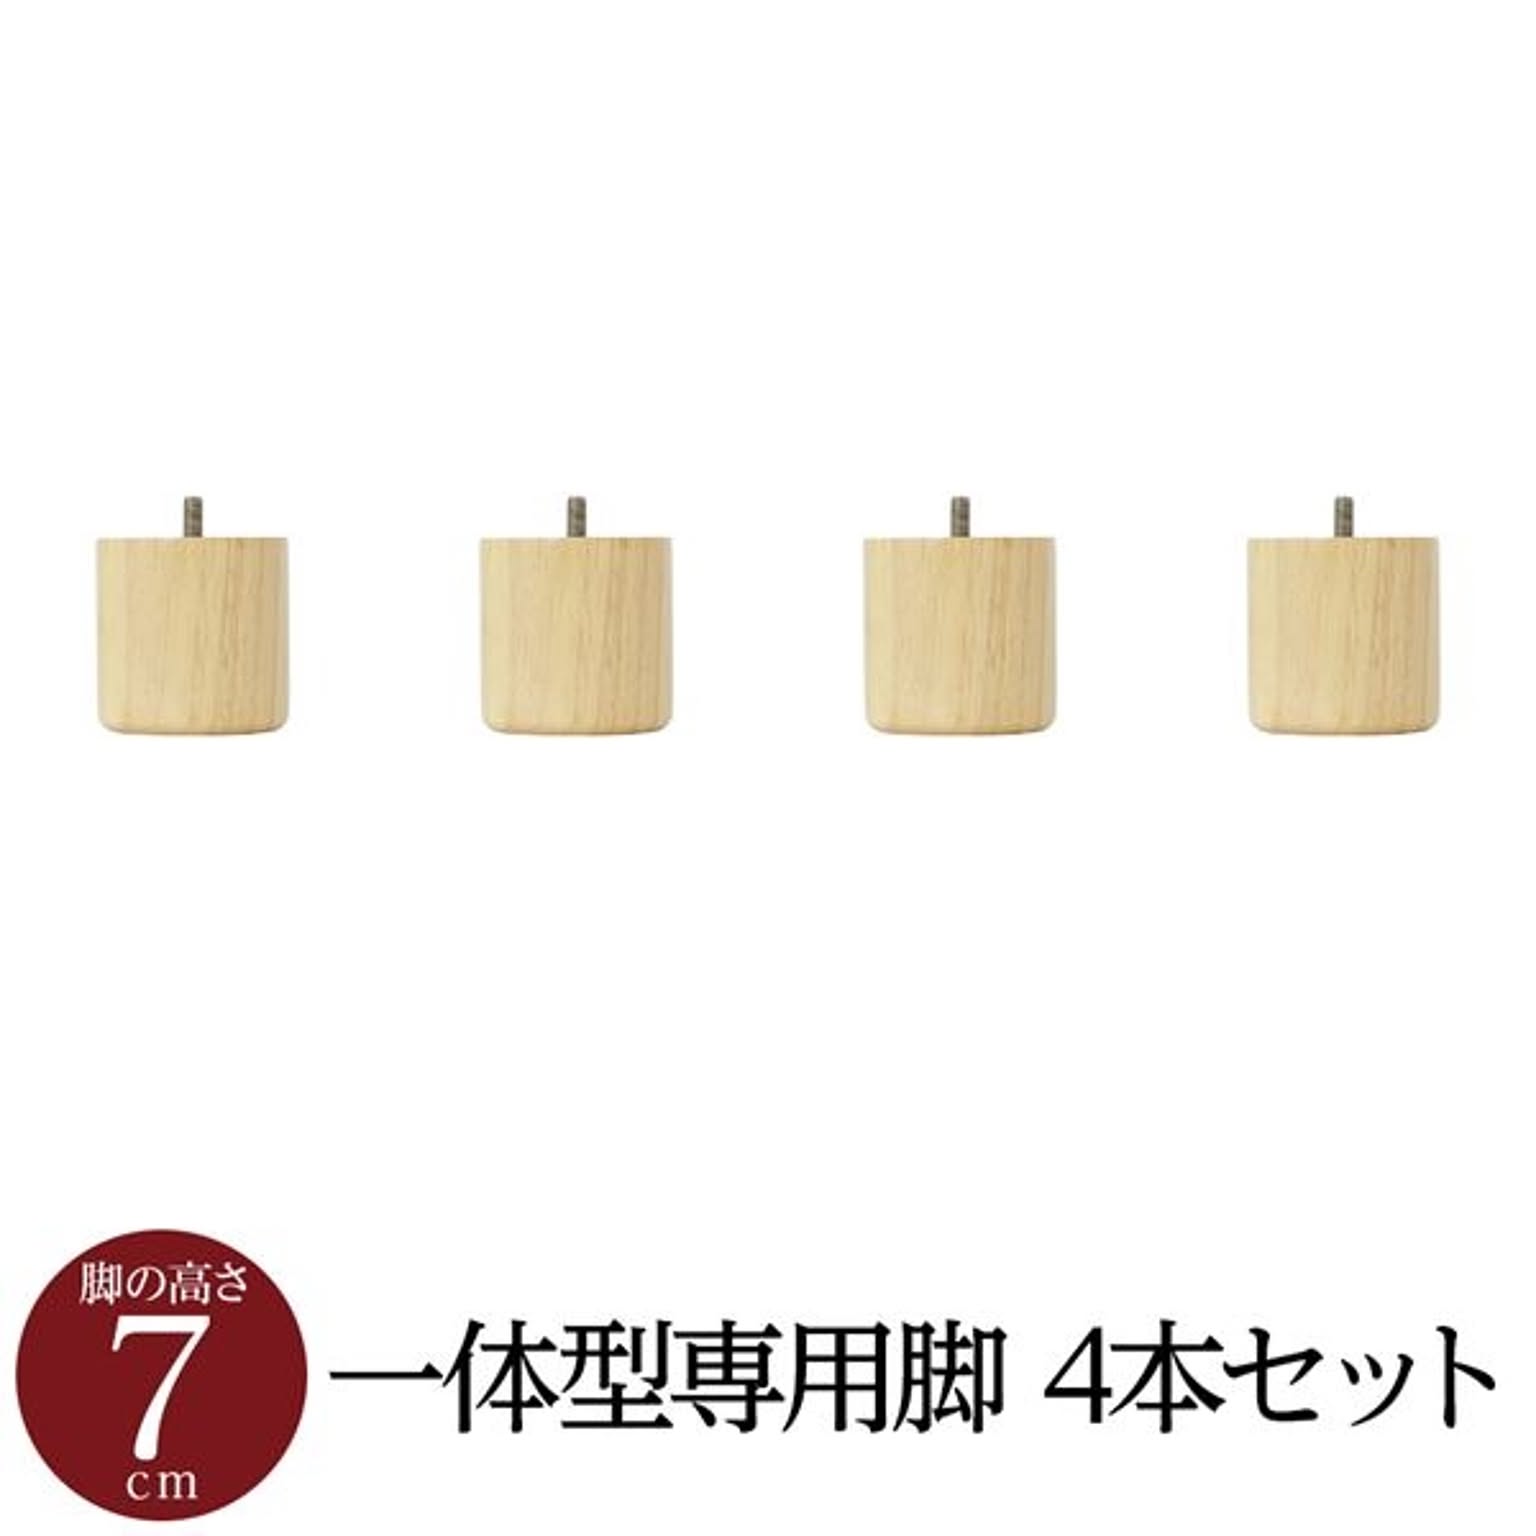 日本製 木脚マットレスベッド専用パーツ 4本セット 脚付き 7cm